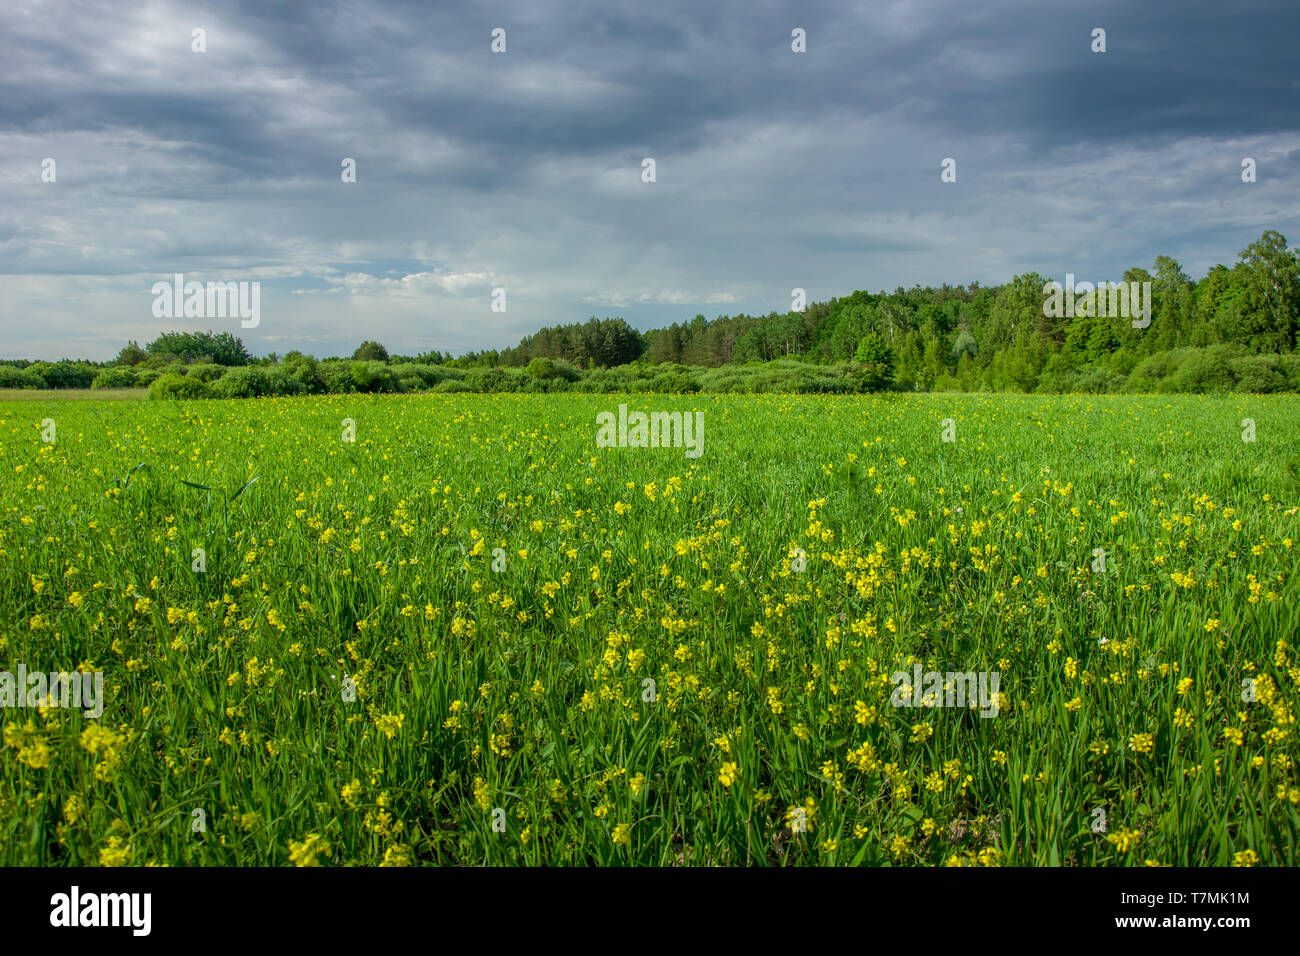 Grüne Wiese mit gelben Blumen, Wald am Horizont und dunkle Wolken am Himmel - Ansicht im Frühling Stockfoto